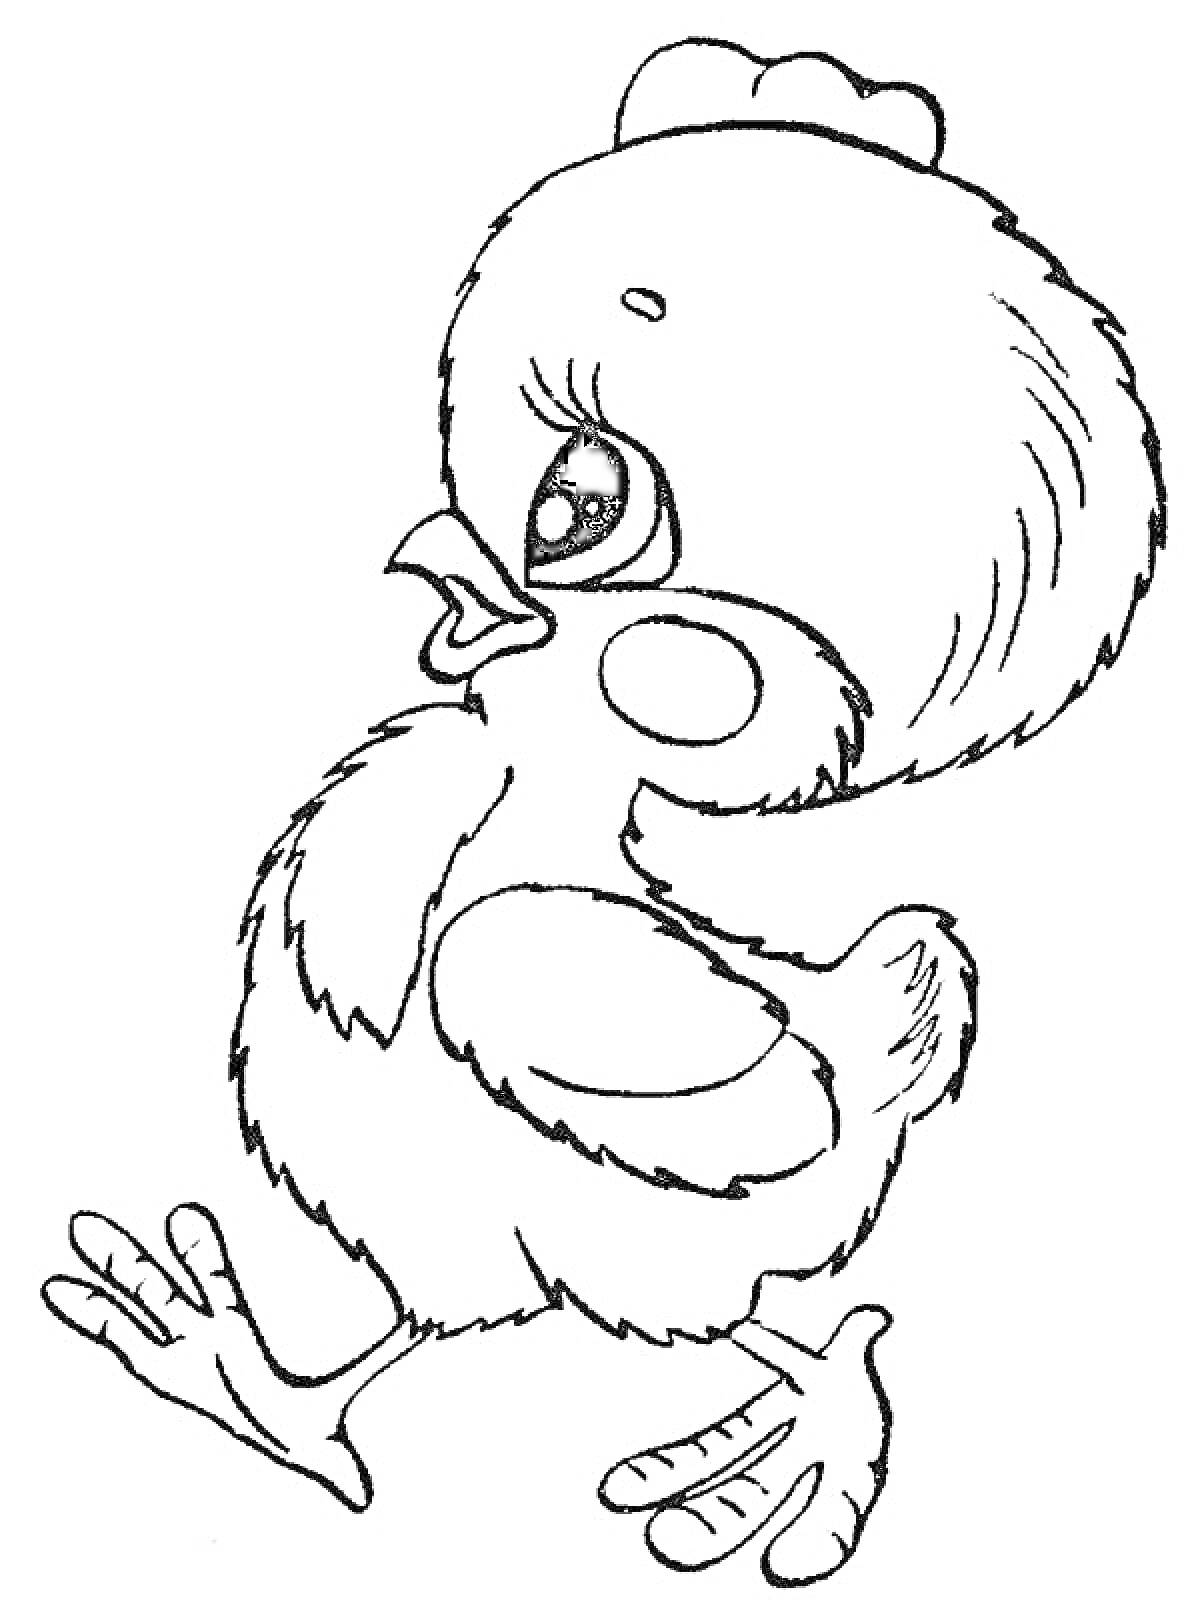 Раскраска Мультяшный птенец с крупными глазами и гребнем, шагающий влево